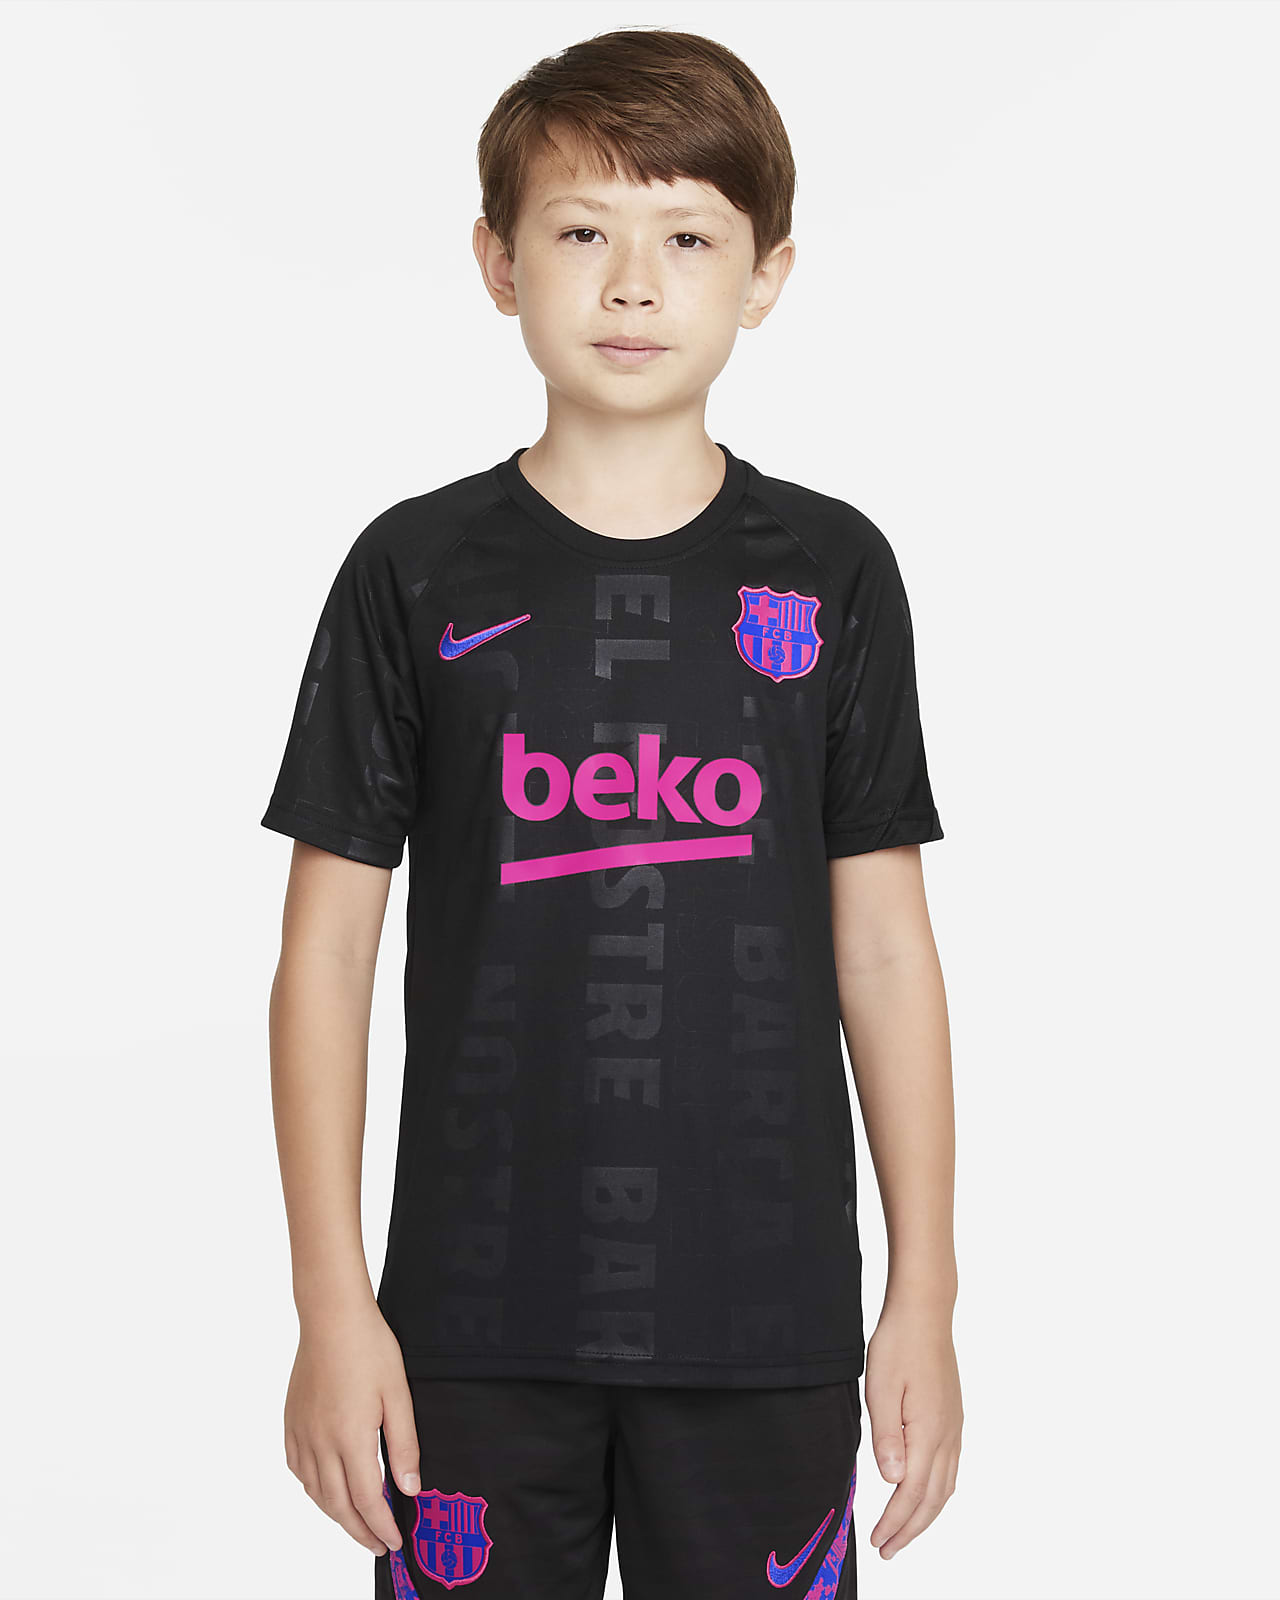 Ποδοσφαιρική μπλούζα προθέρμανσης Nike Dri-FIT Μπαρτσελόνα για μεγάλα παιδιά